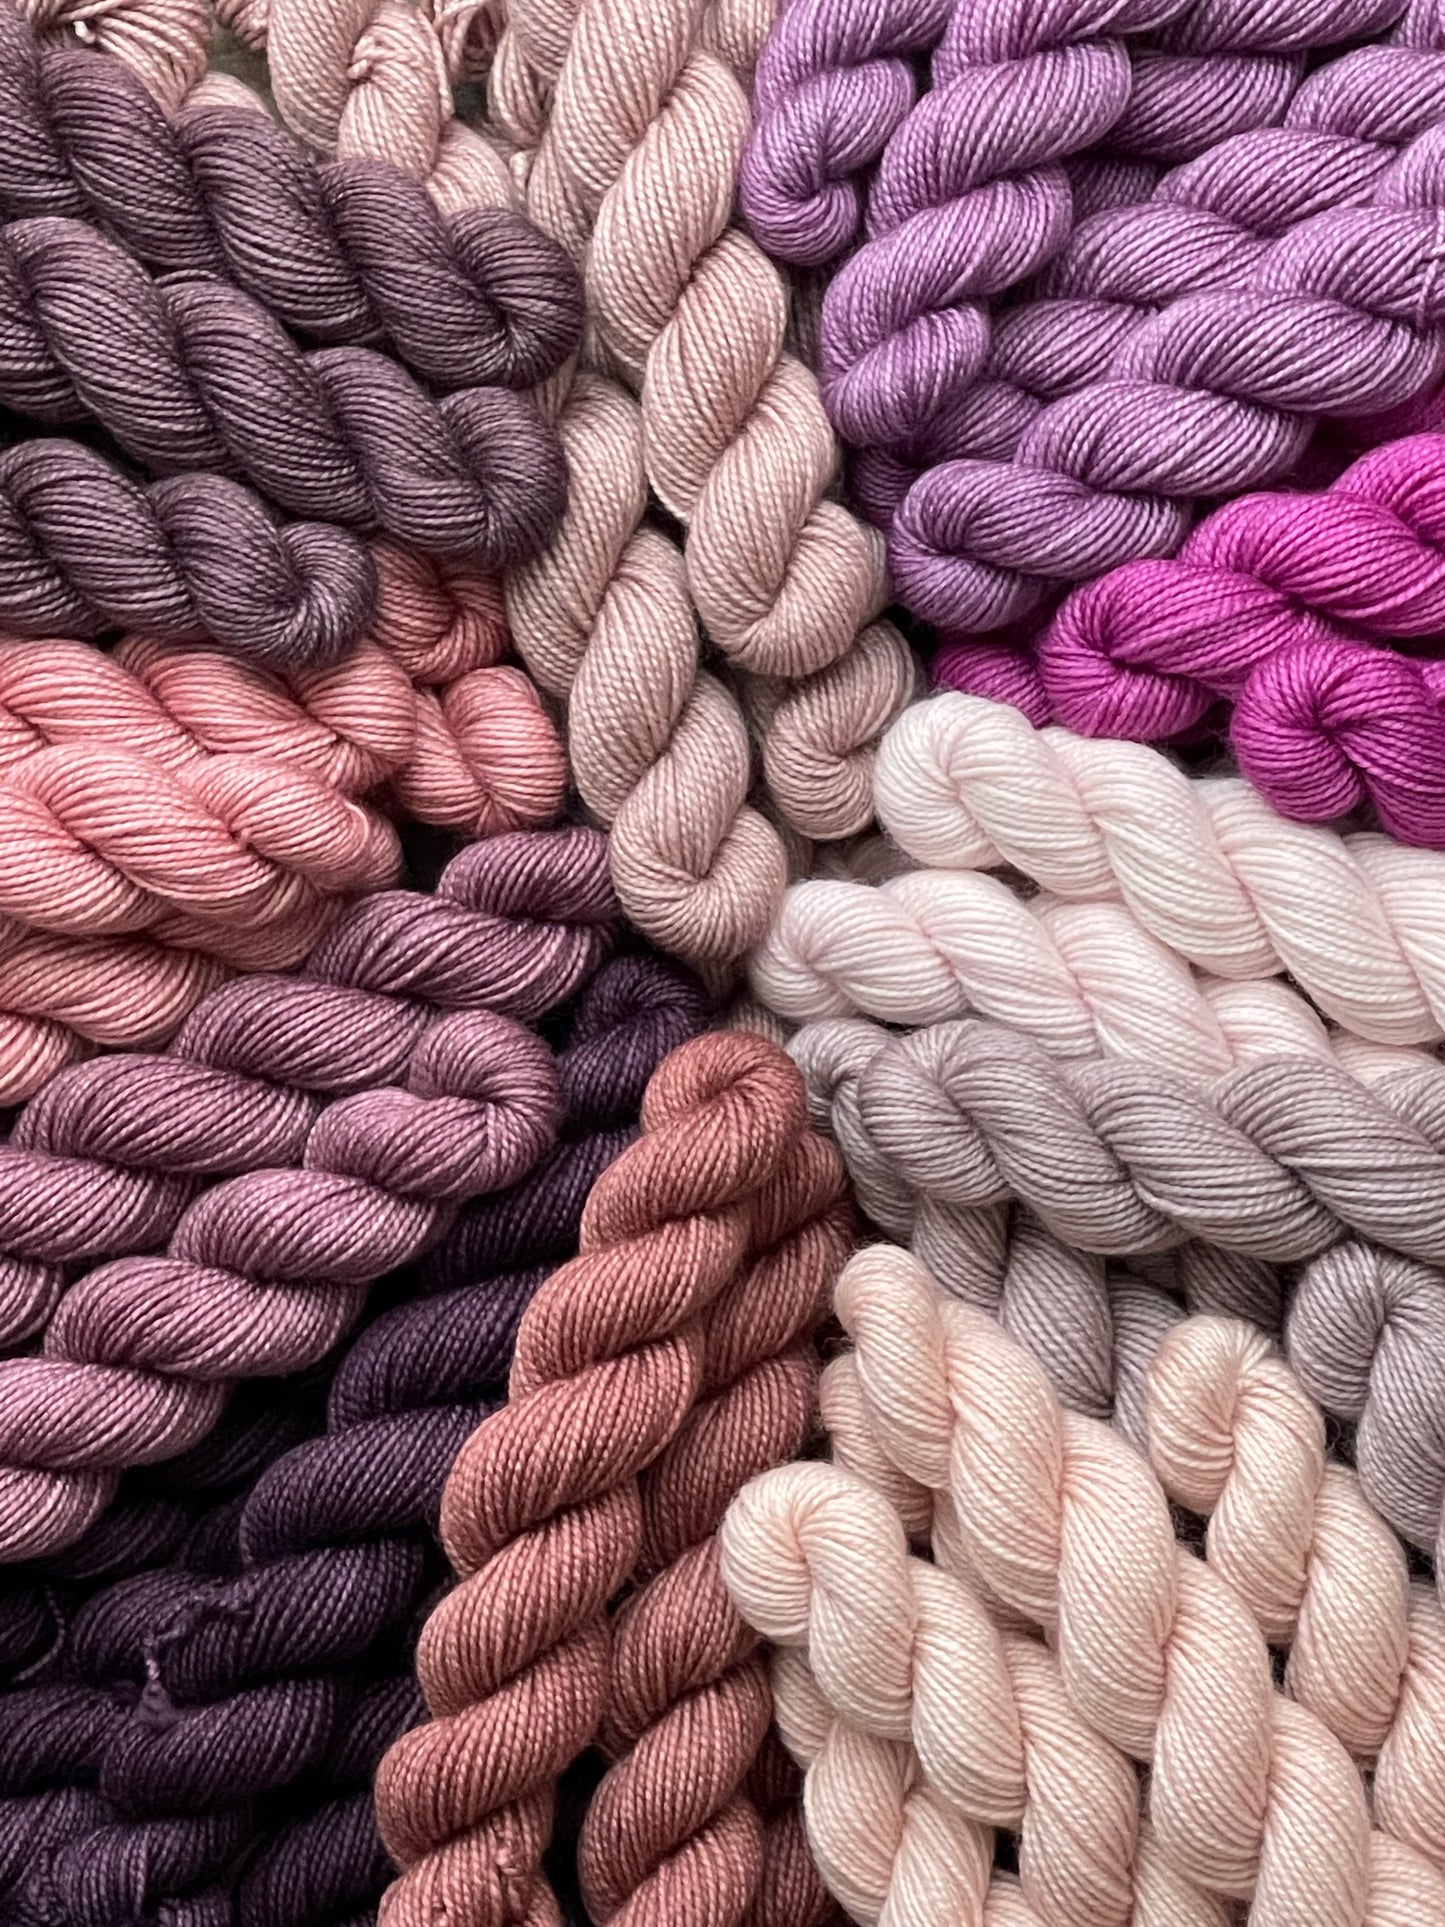 Pinks & Purples core colors mini set